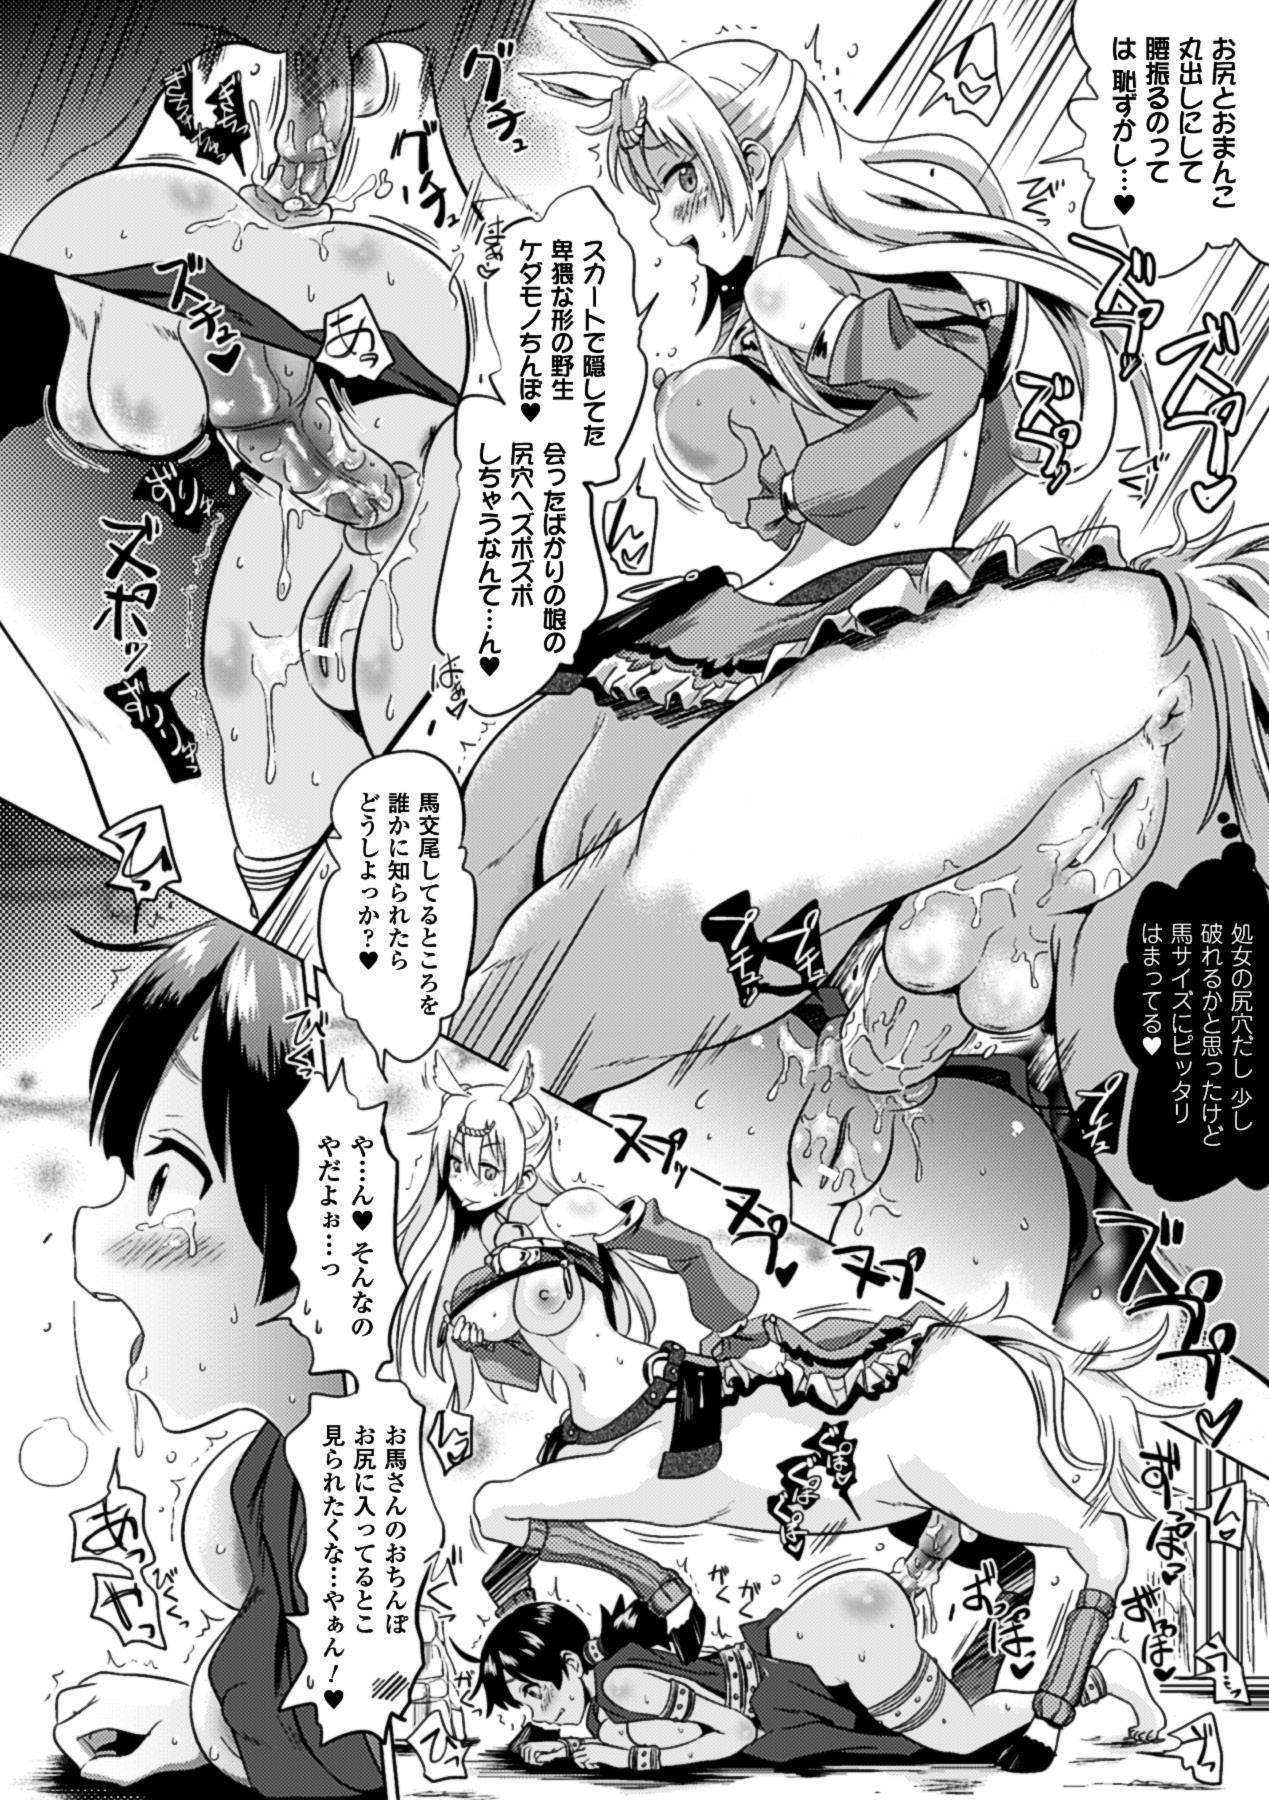 Bessatsu Comic Unreal Monster Musume Paradise Digital Ban Vol. 3 57